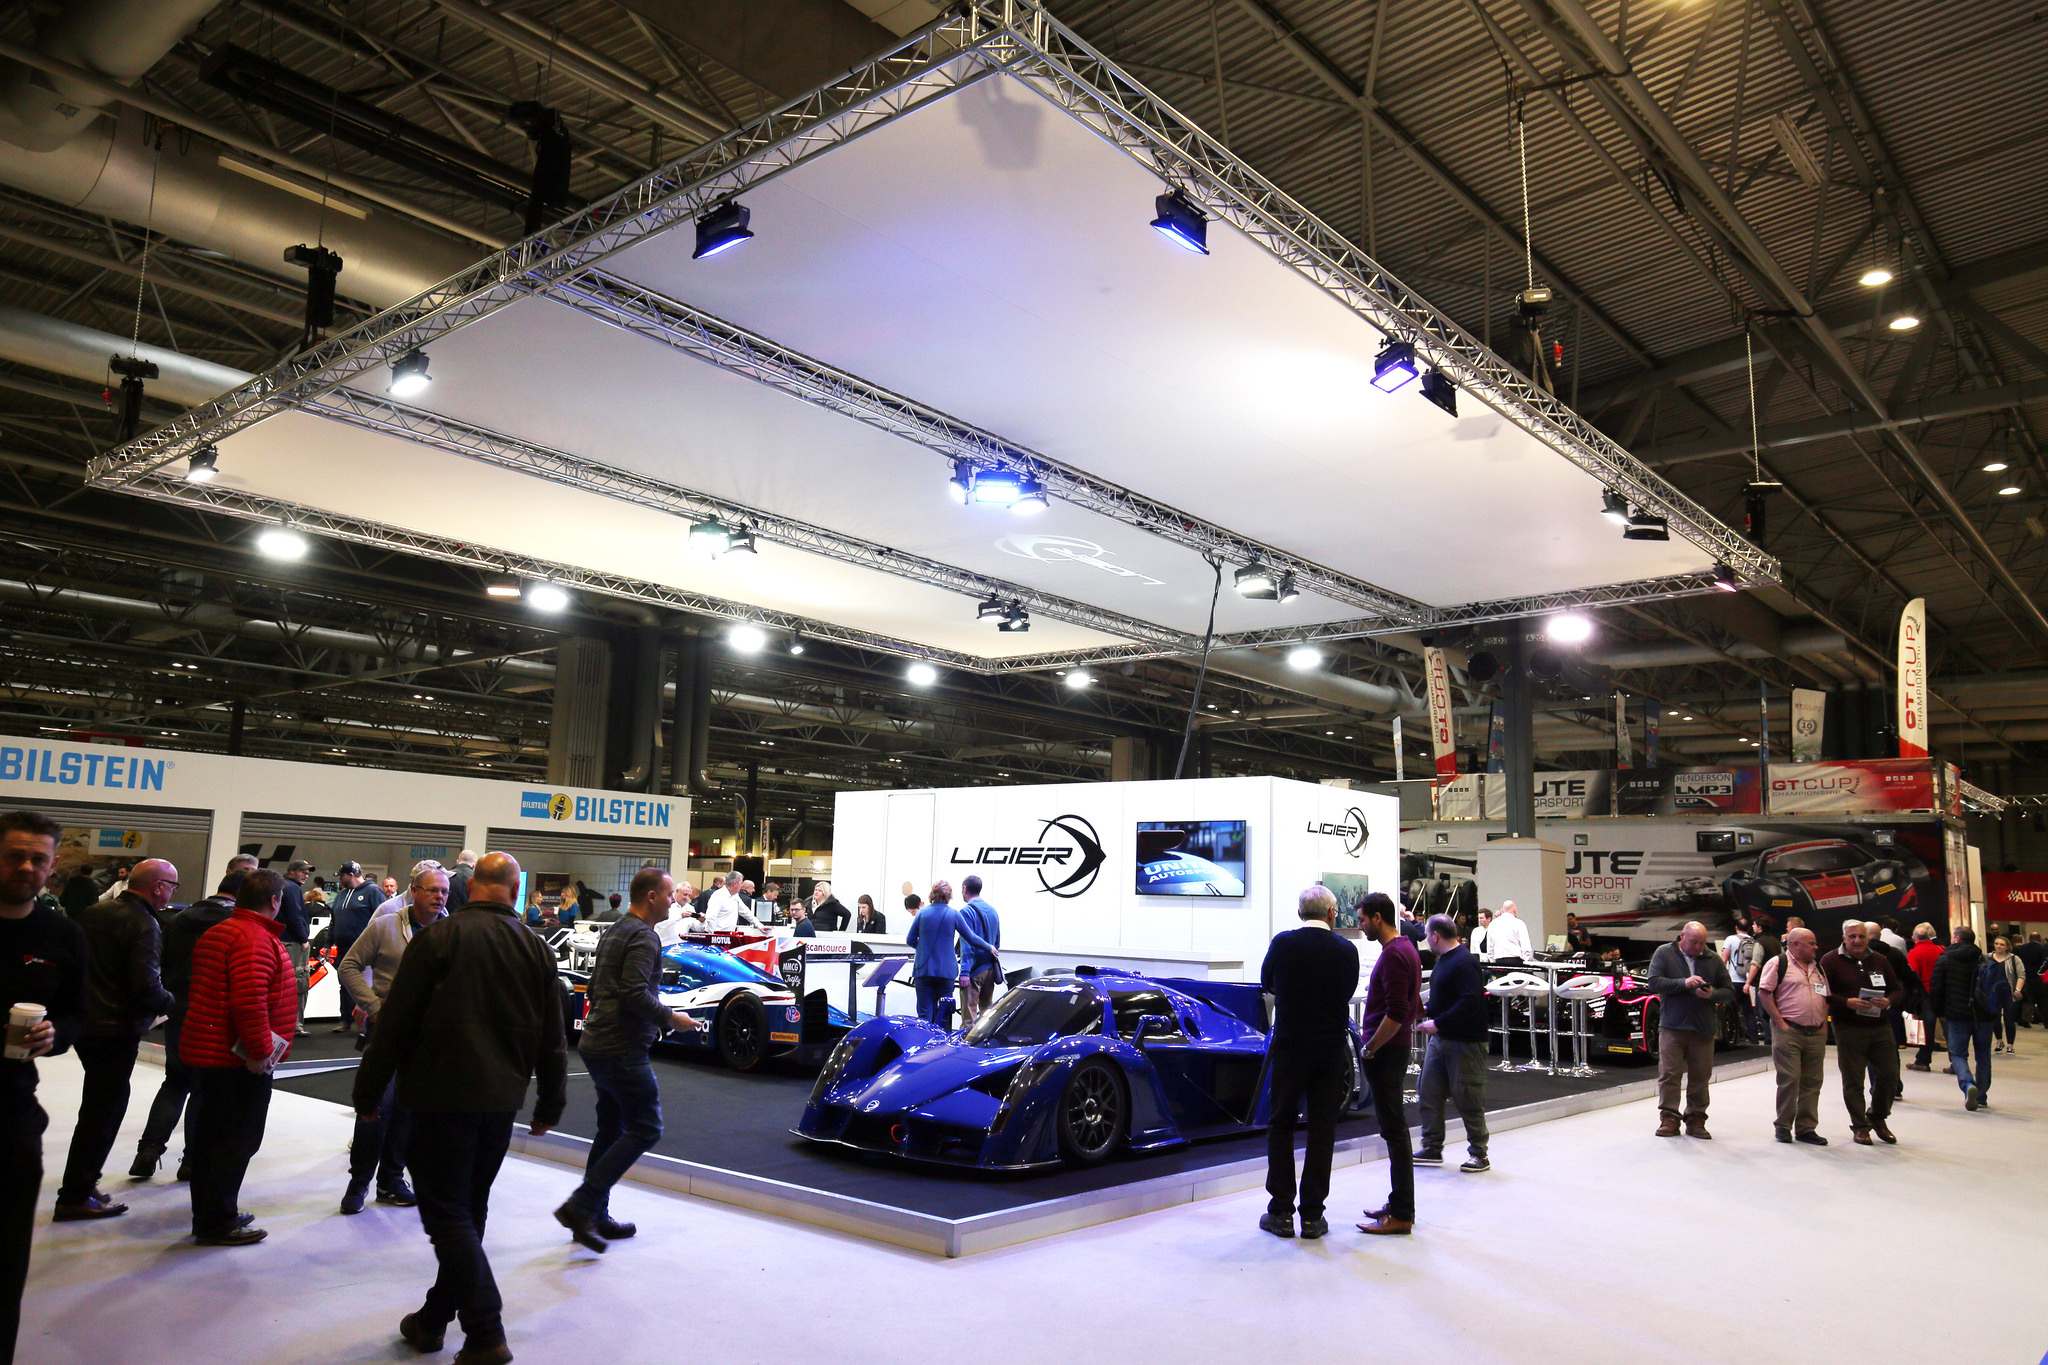 ligier 20186 Ligier at Autosport International Show 2018